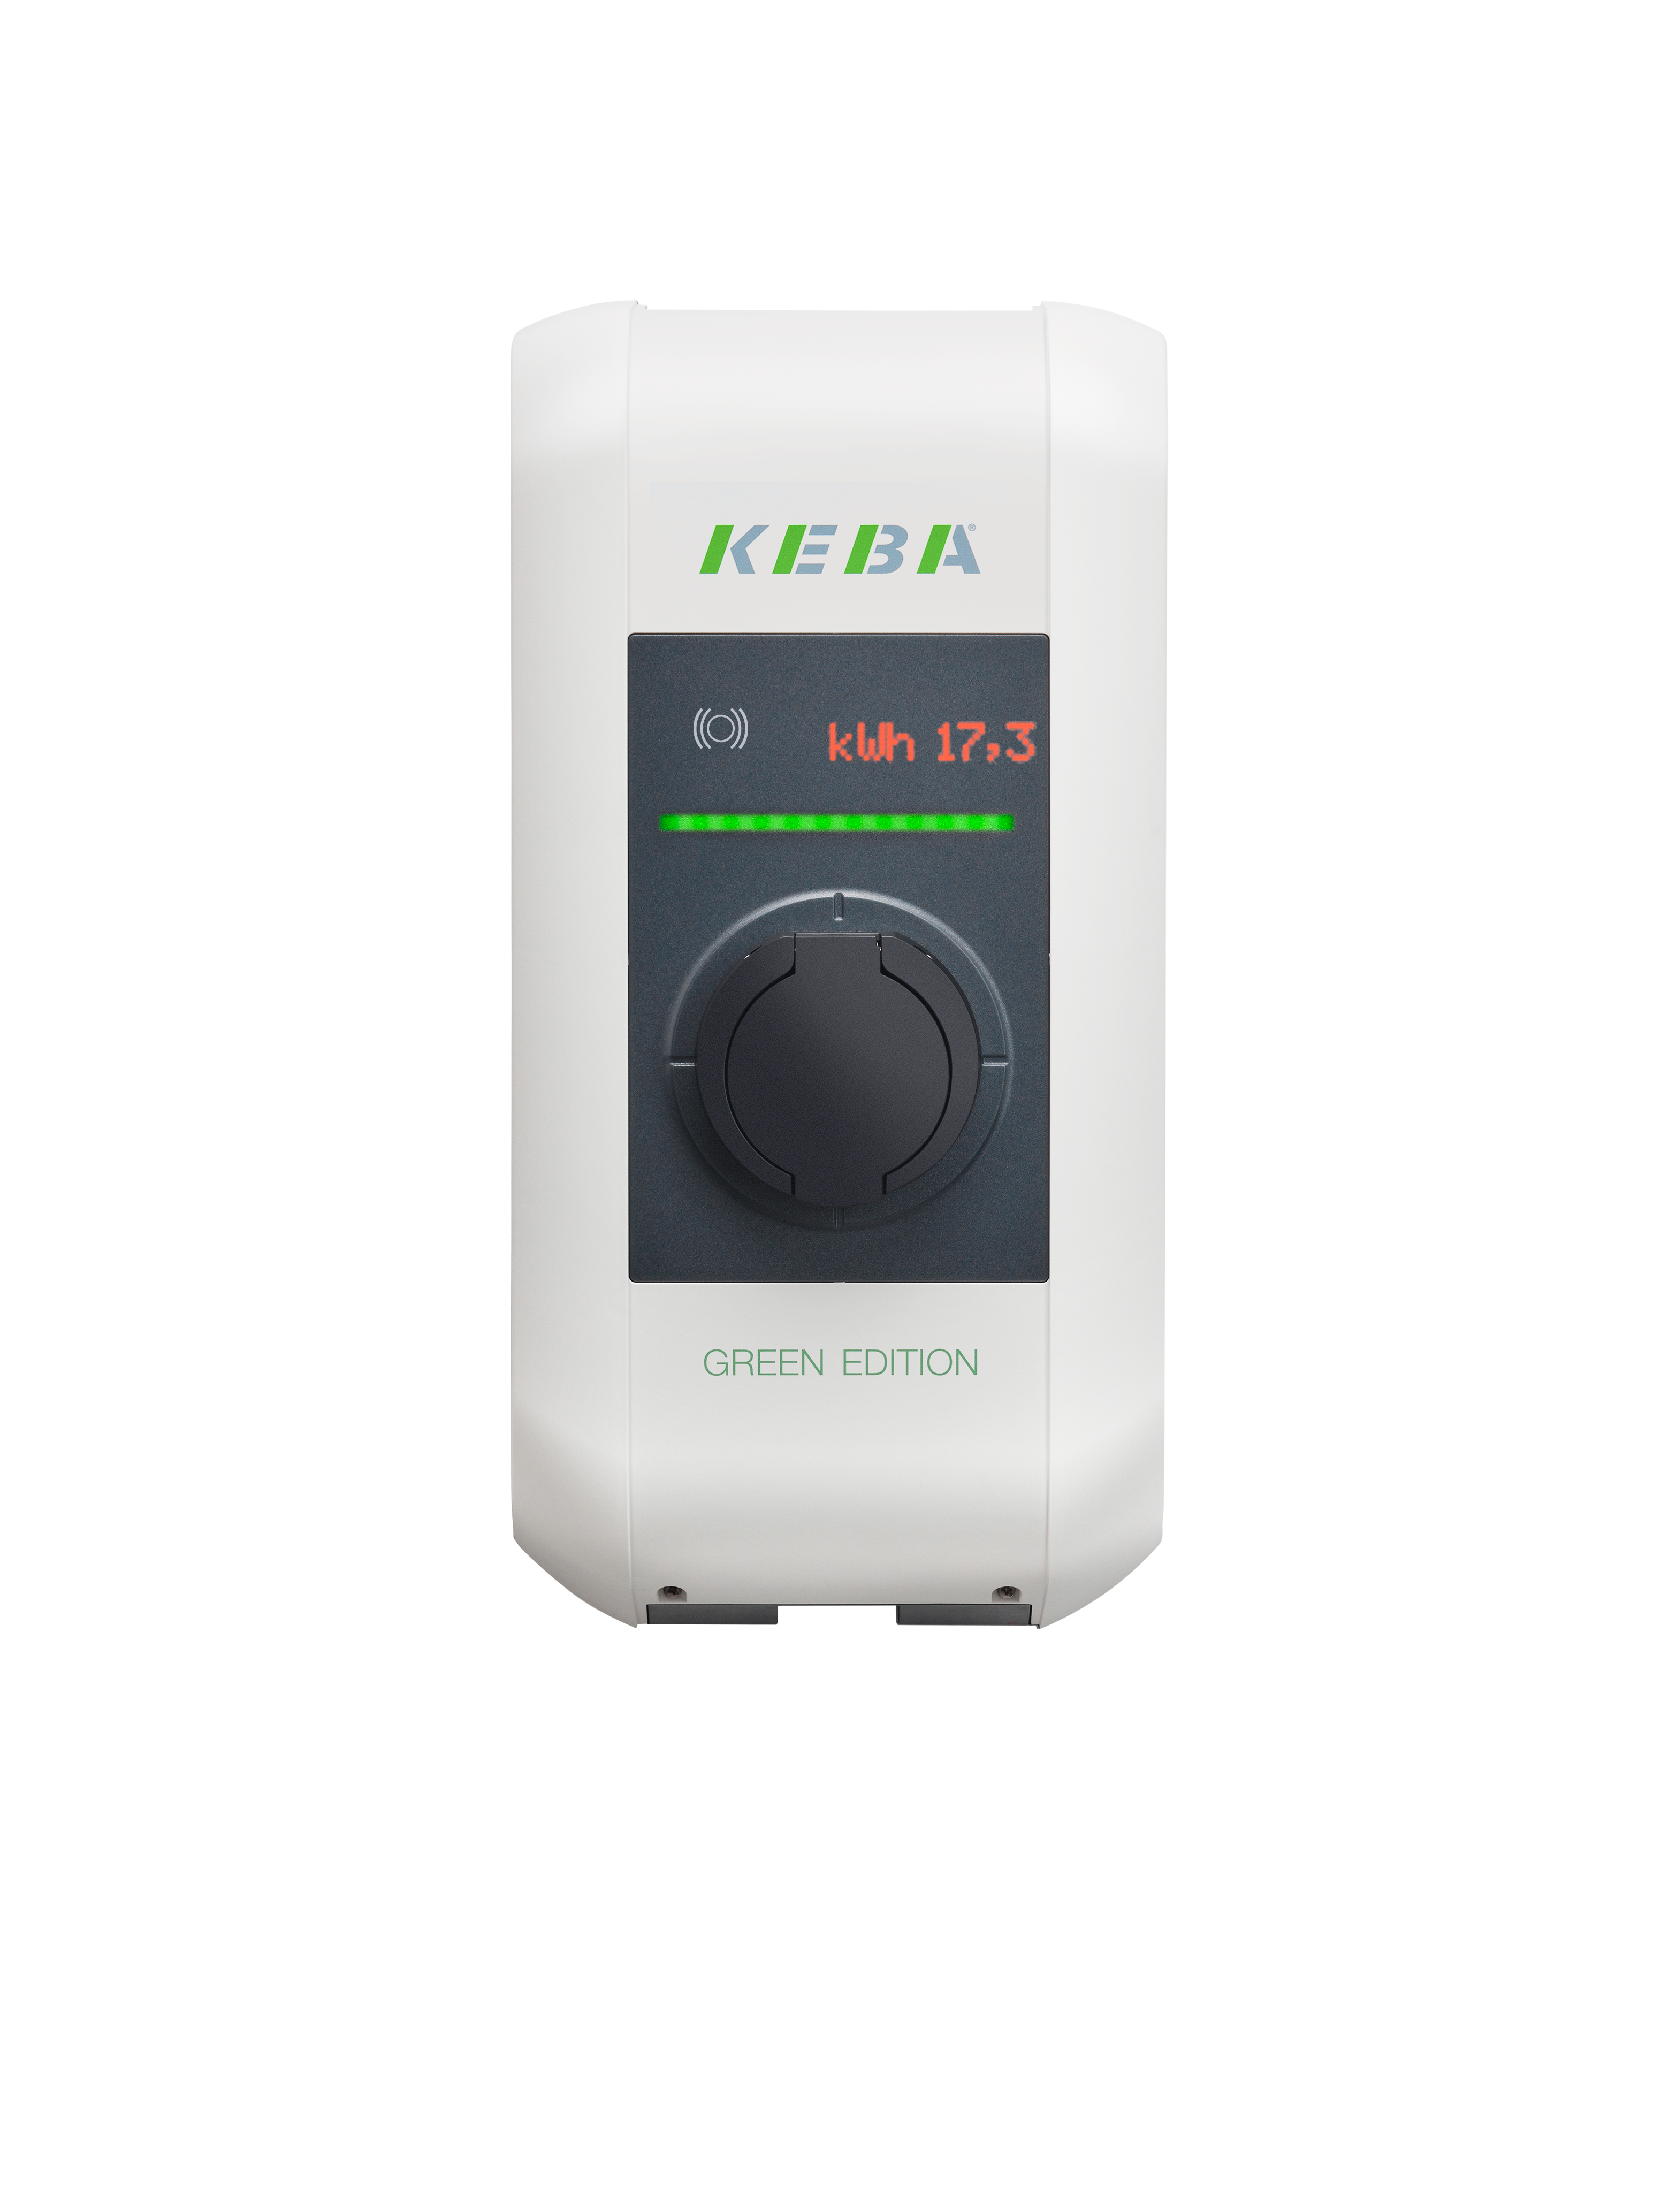 KEBA KeContact P30 x-series GREEN EDITION Wallbox